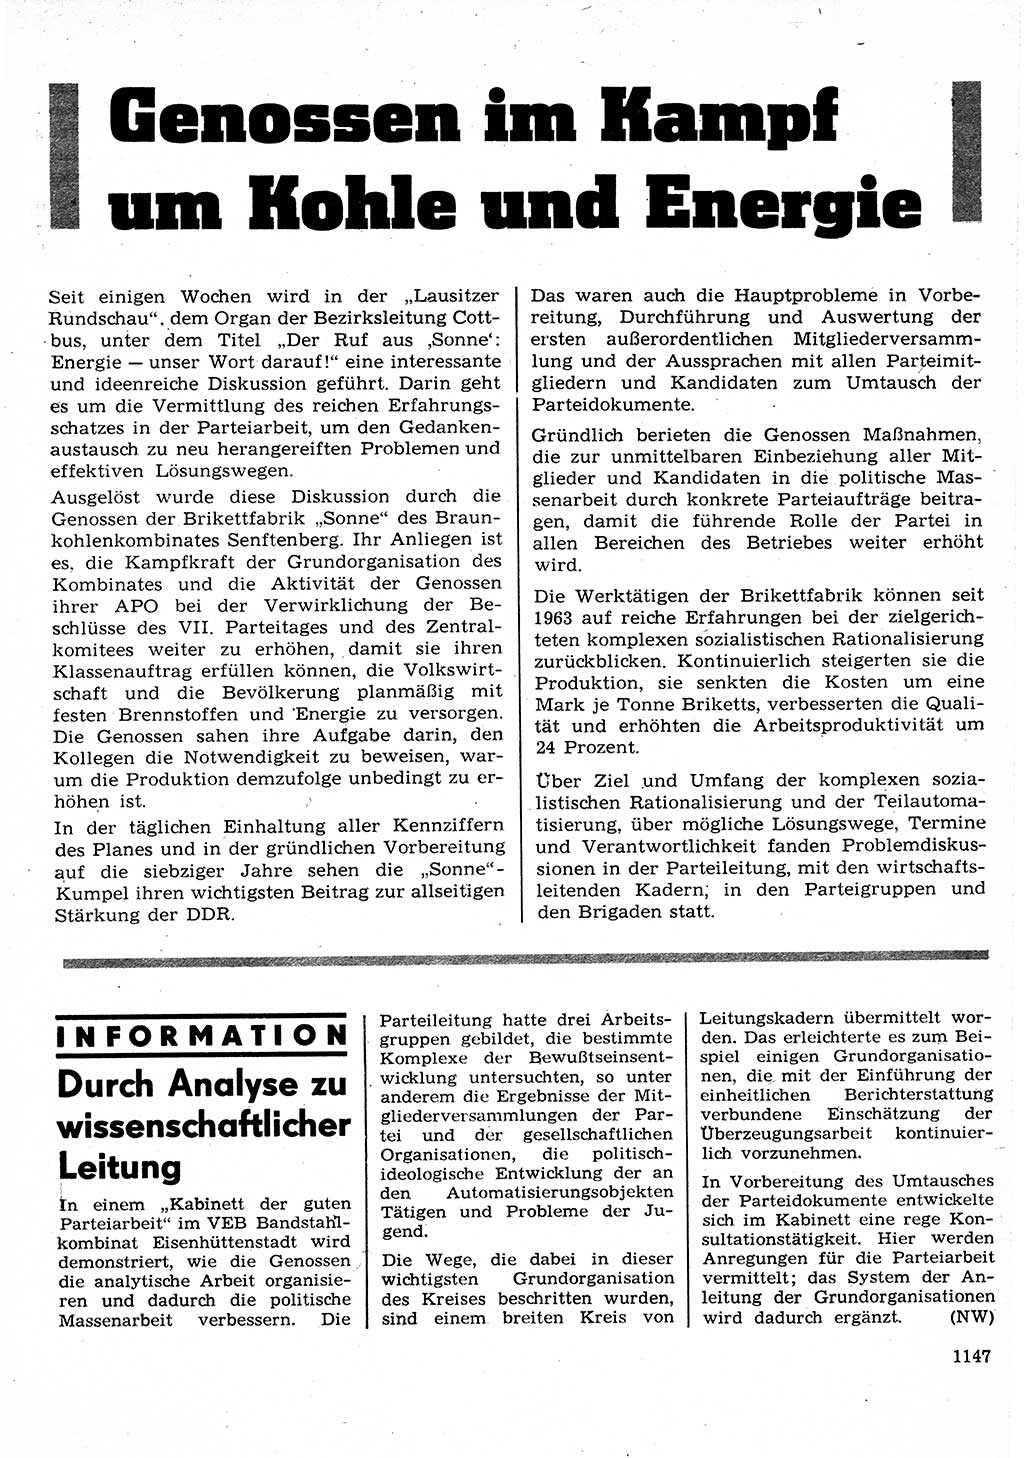 Neuer Weg (NW), Organ des Zentralkomitees (ZK) der SED (Sozialistische Einheitspartei Deutschlands) für Fragen des Parteilebens, 25. Jahrgang [Deutsche Demokratische Republik (DDR)] 1970, Seite 1147 (NW ZK SED DDR 1970, S. 1147)